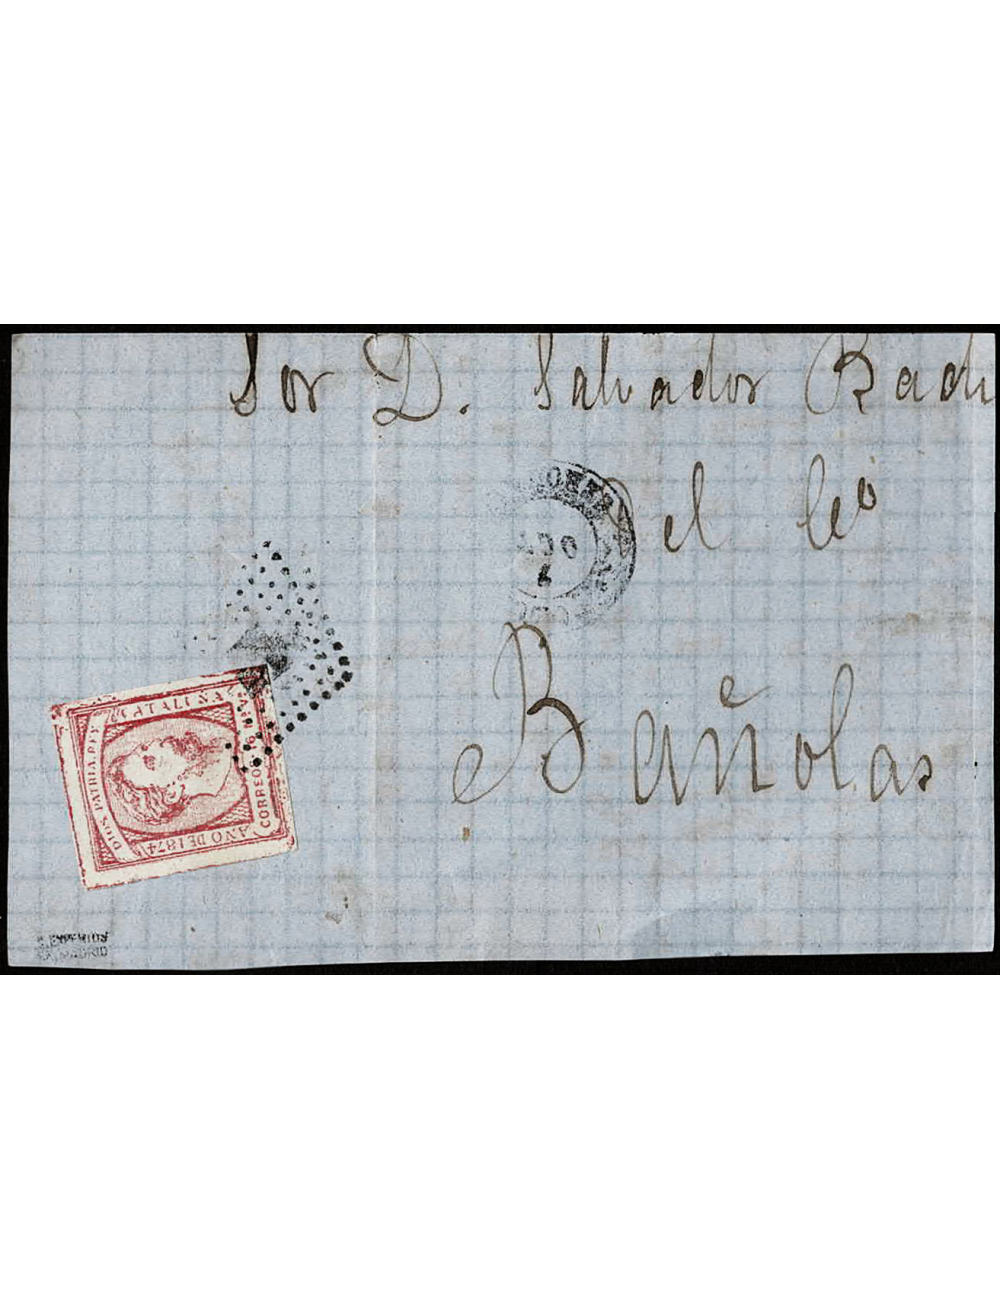 1874 circa (7 OCT) Olot a Banyoles. 16 maravedís rojo sello de Carlos VII, de la emisión carlista de Cataluña mat. RP. En el fre